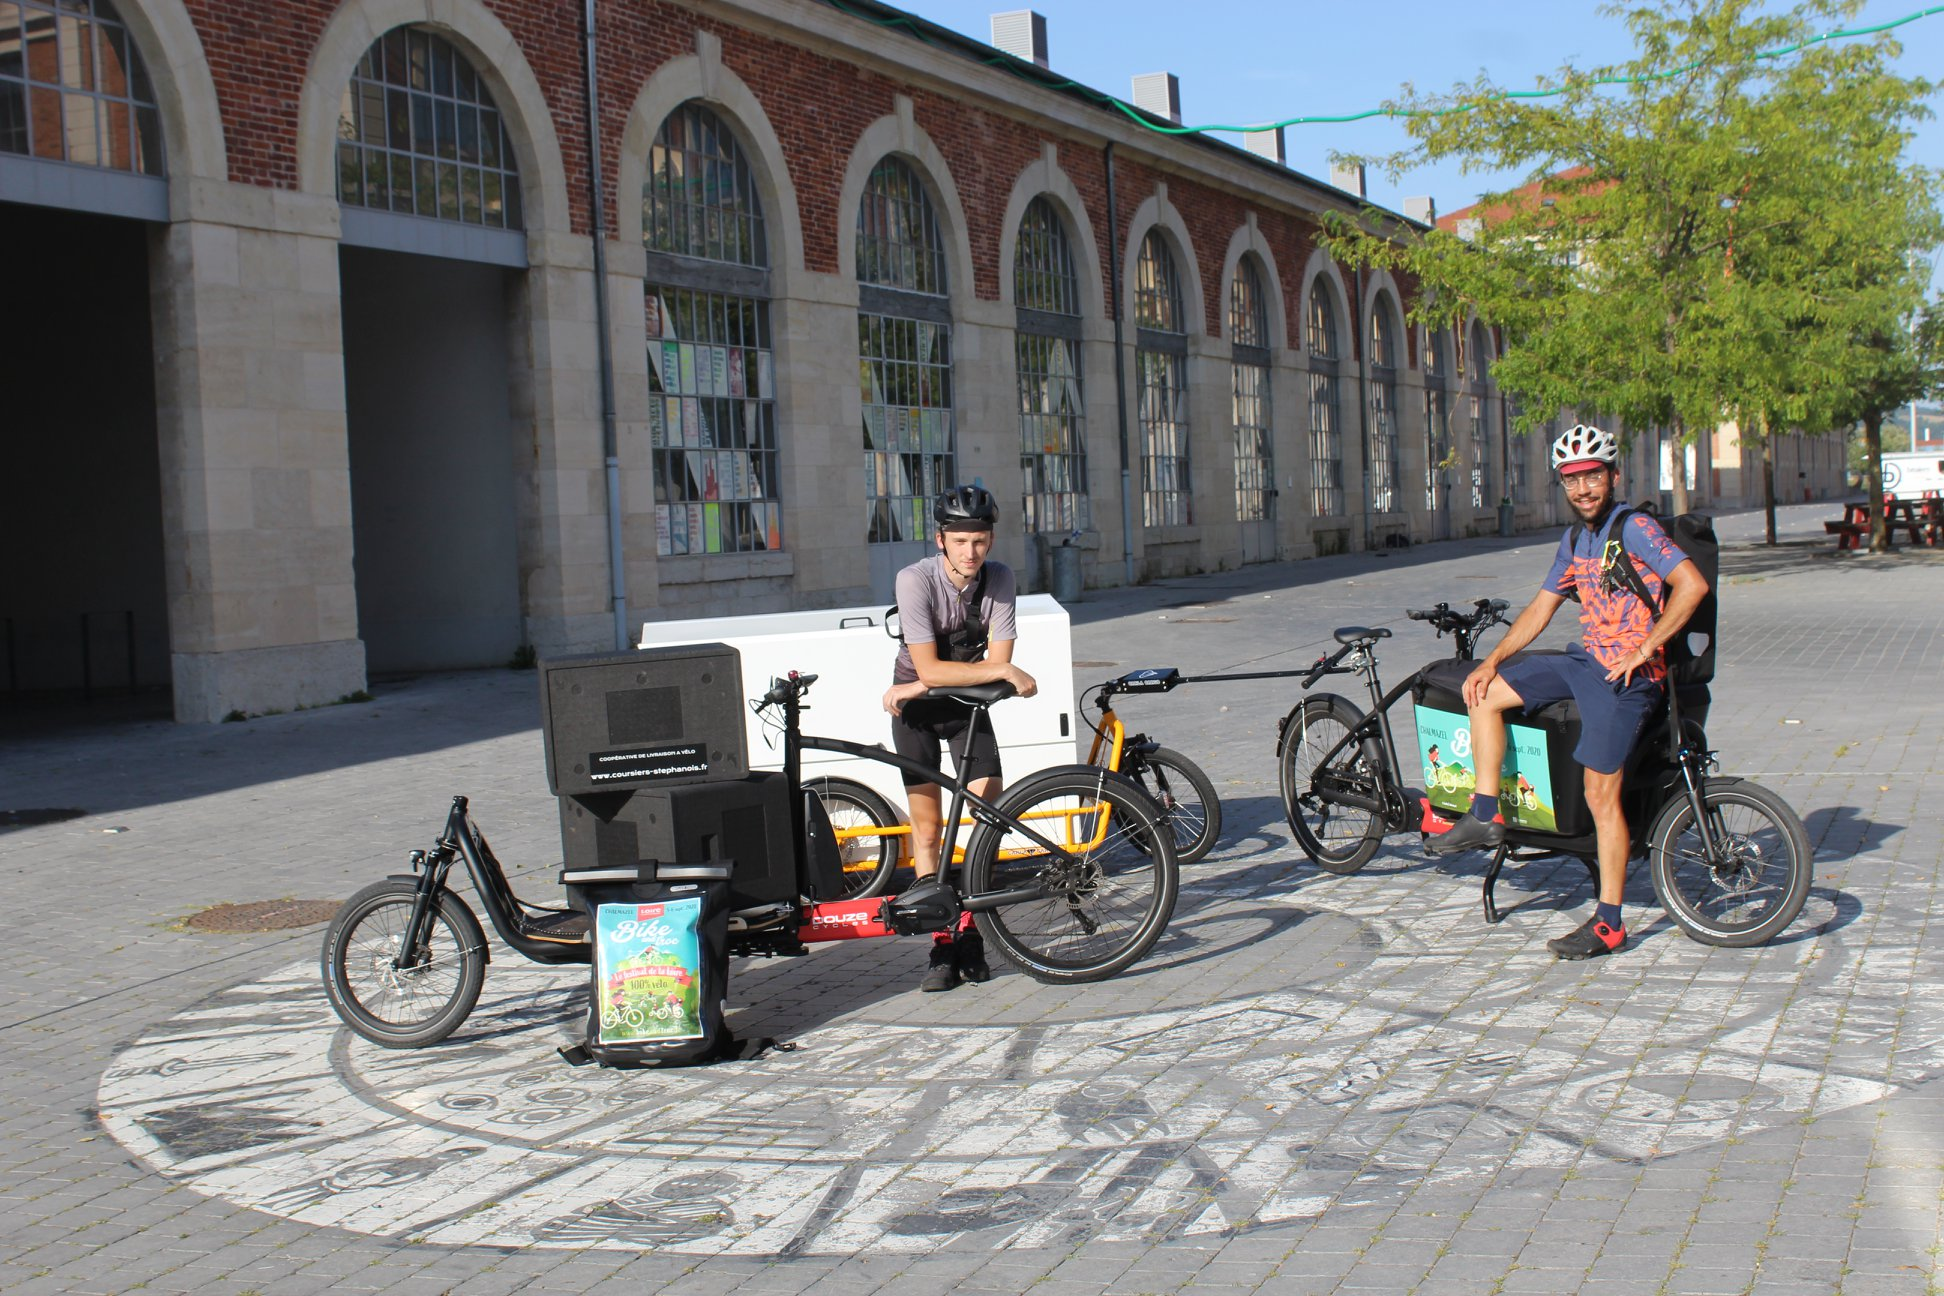 Les Coursiers stéphanois, coopérative de livreurs à vélo basée à Saint-Étienne, membre de la fédération Coopcycle © Coopcycle